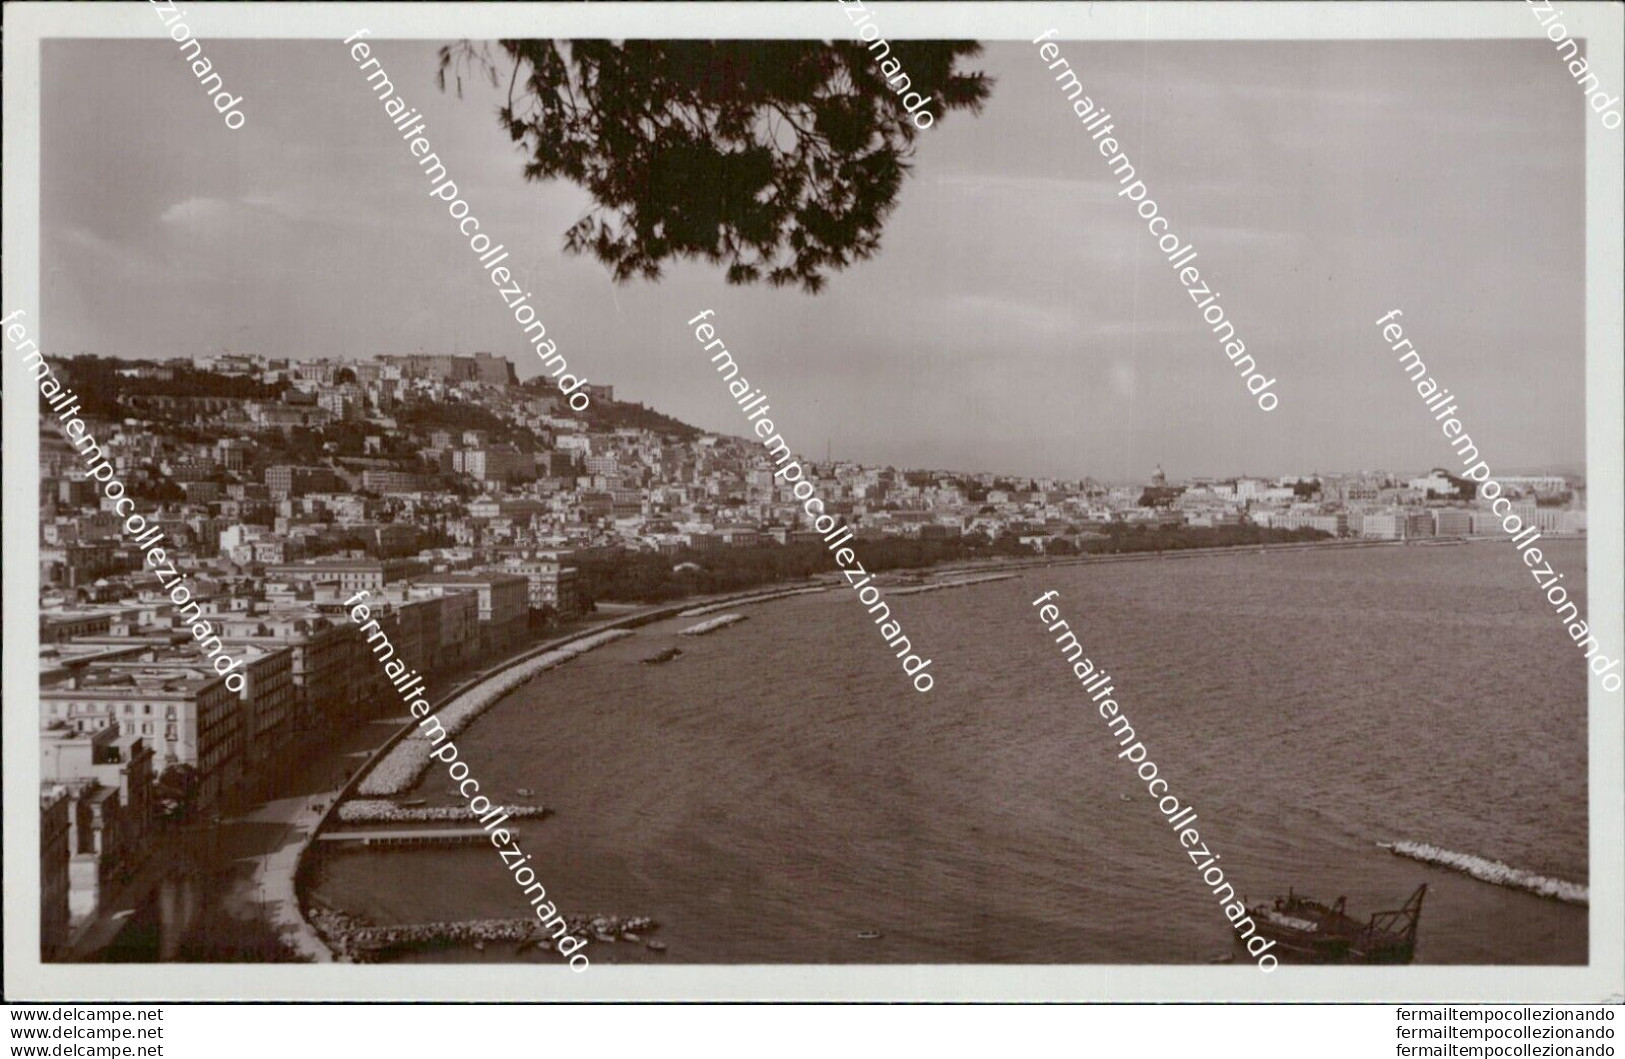 At531 Cartolina Napoli Citta' Posillipo Panorama Del Rione Sannazaro - Napoli (Napels)